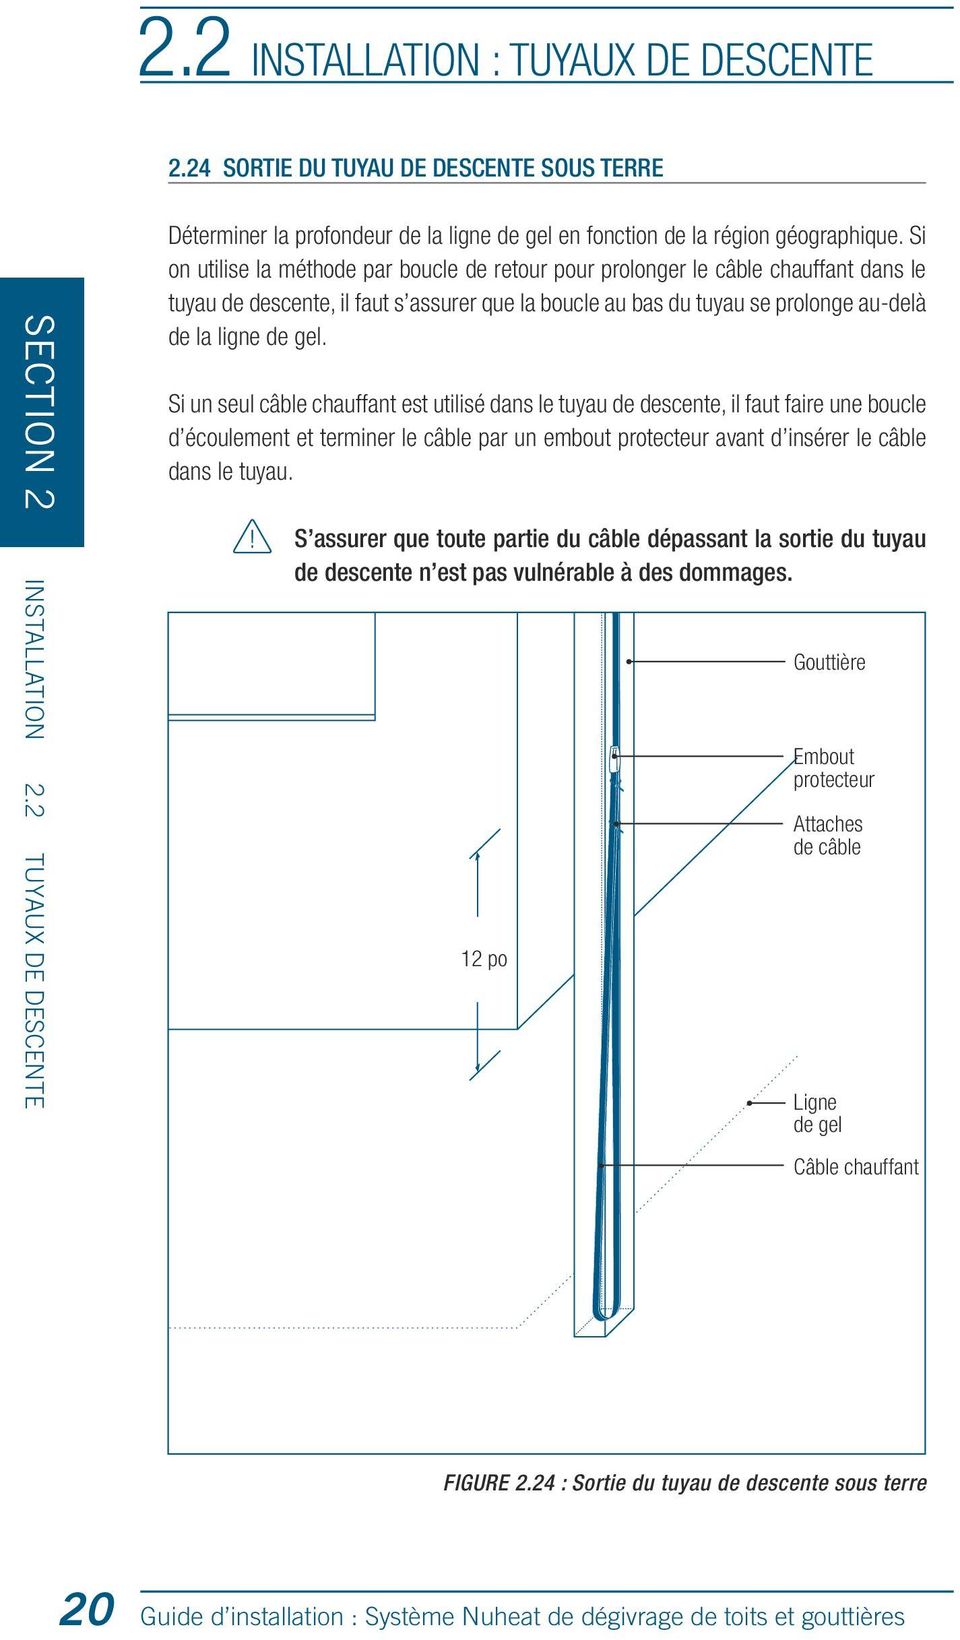 Si on utilise la méthode par boucle de retour pour prolonger le câble chauffant dans le tuyau de descente, il faut s assurer que la boucle au bas du tuyau se prolonge au-delà de la ligne de gel.